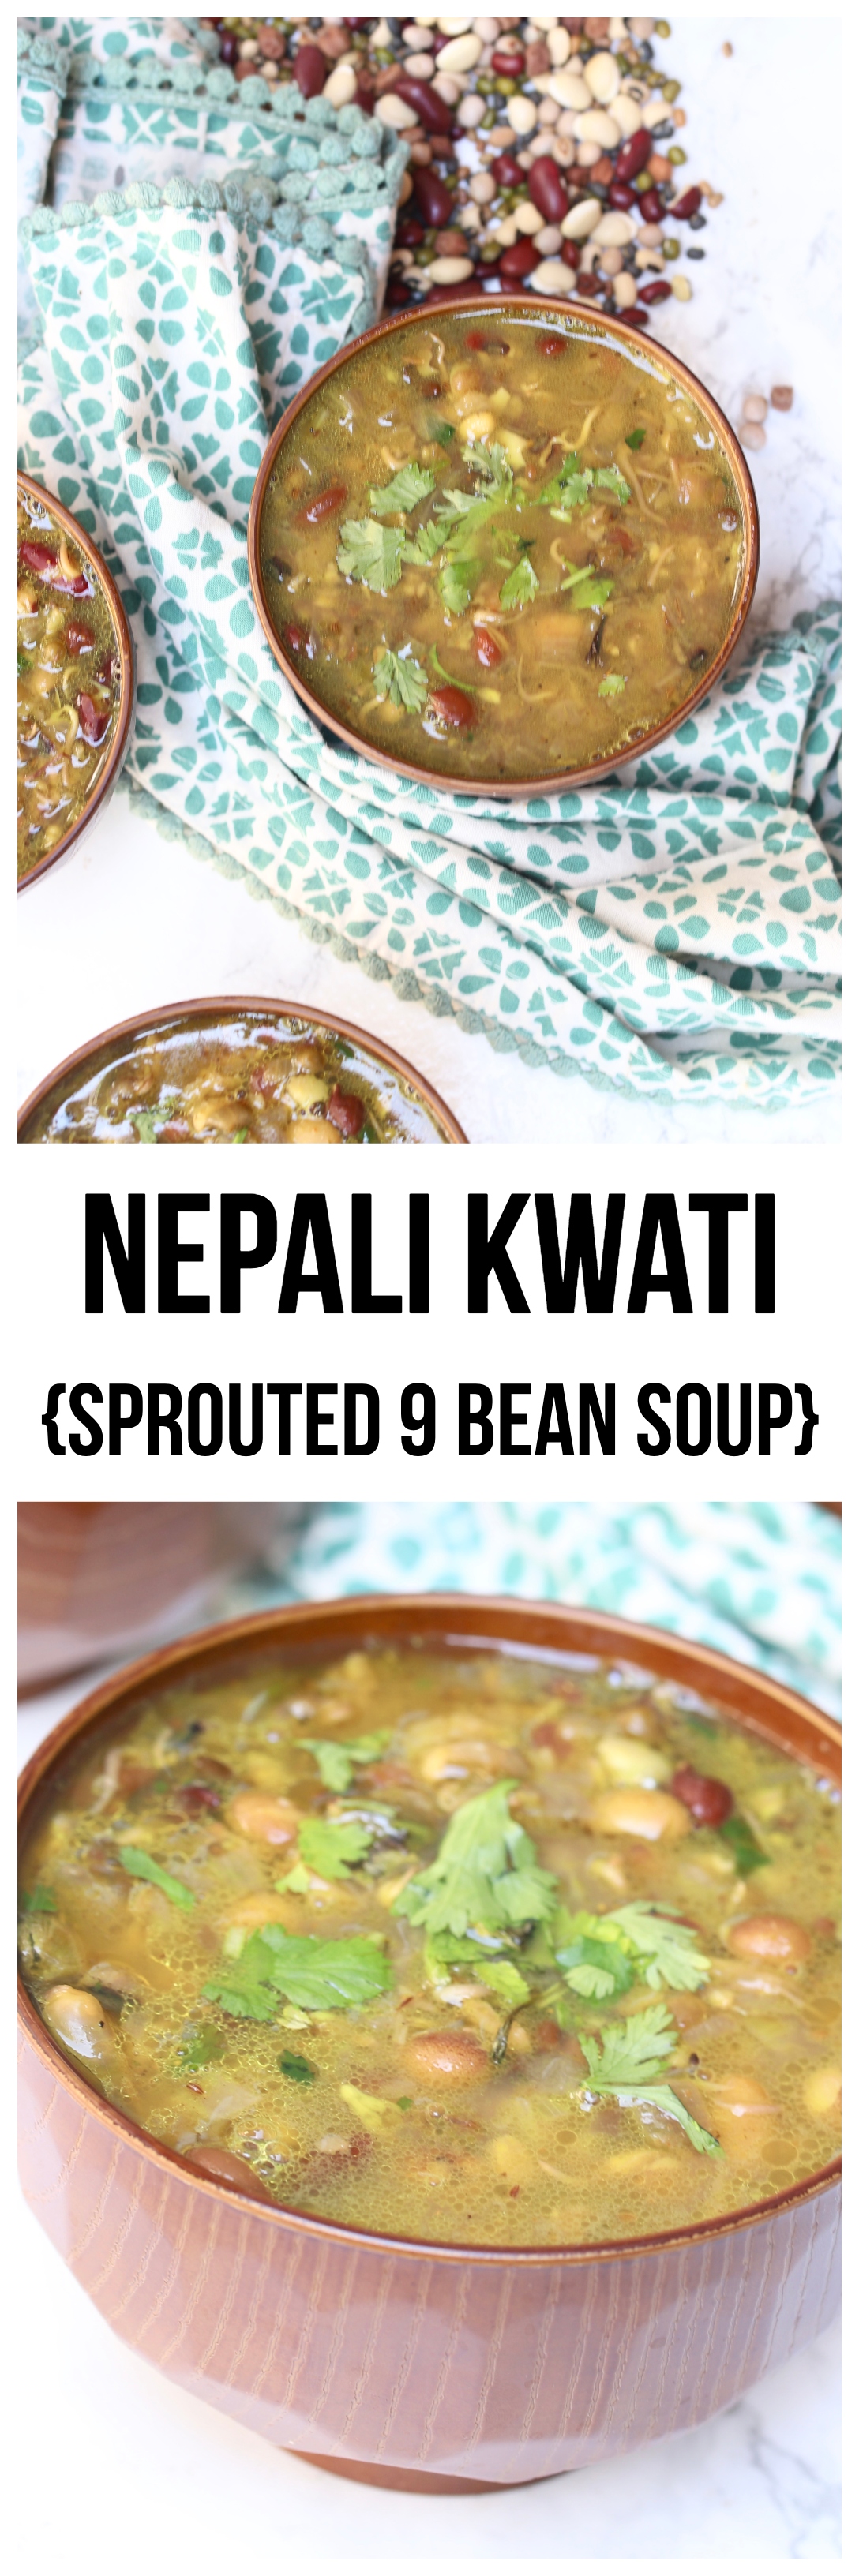 Nepali Kwati Sprouted 9 Bean Soup.jpg